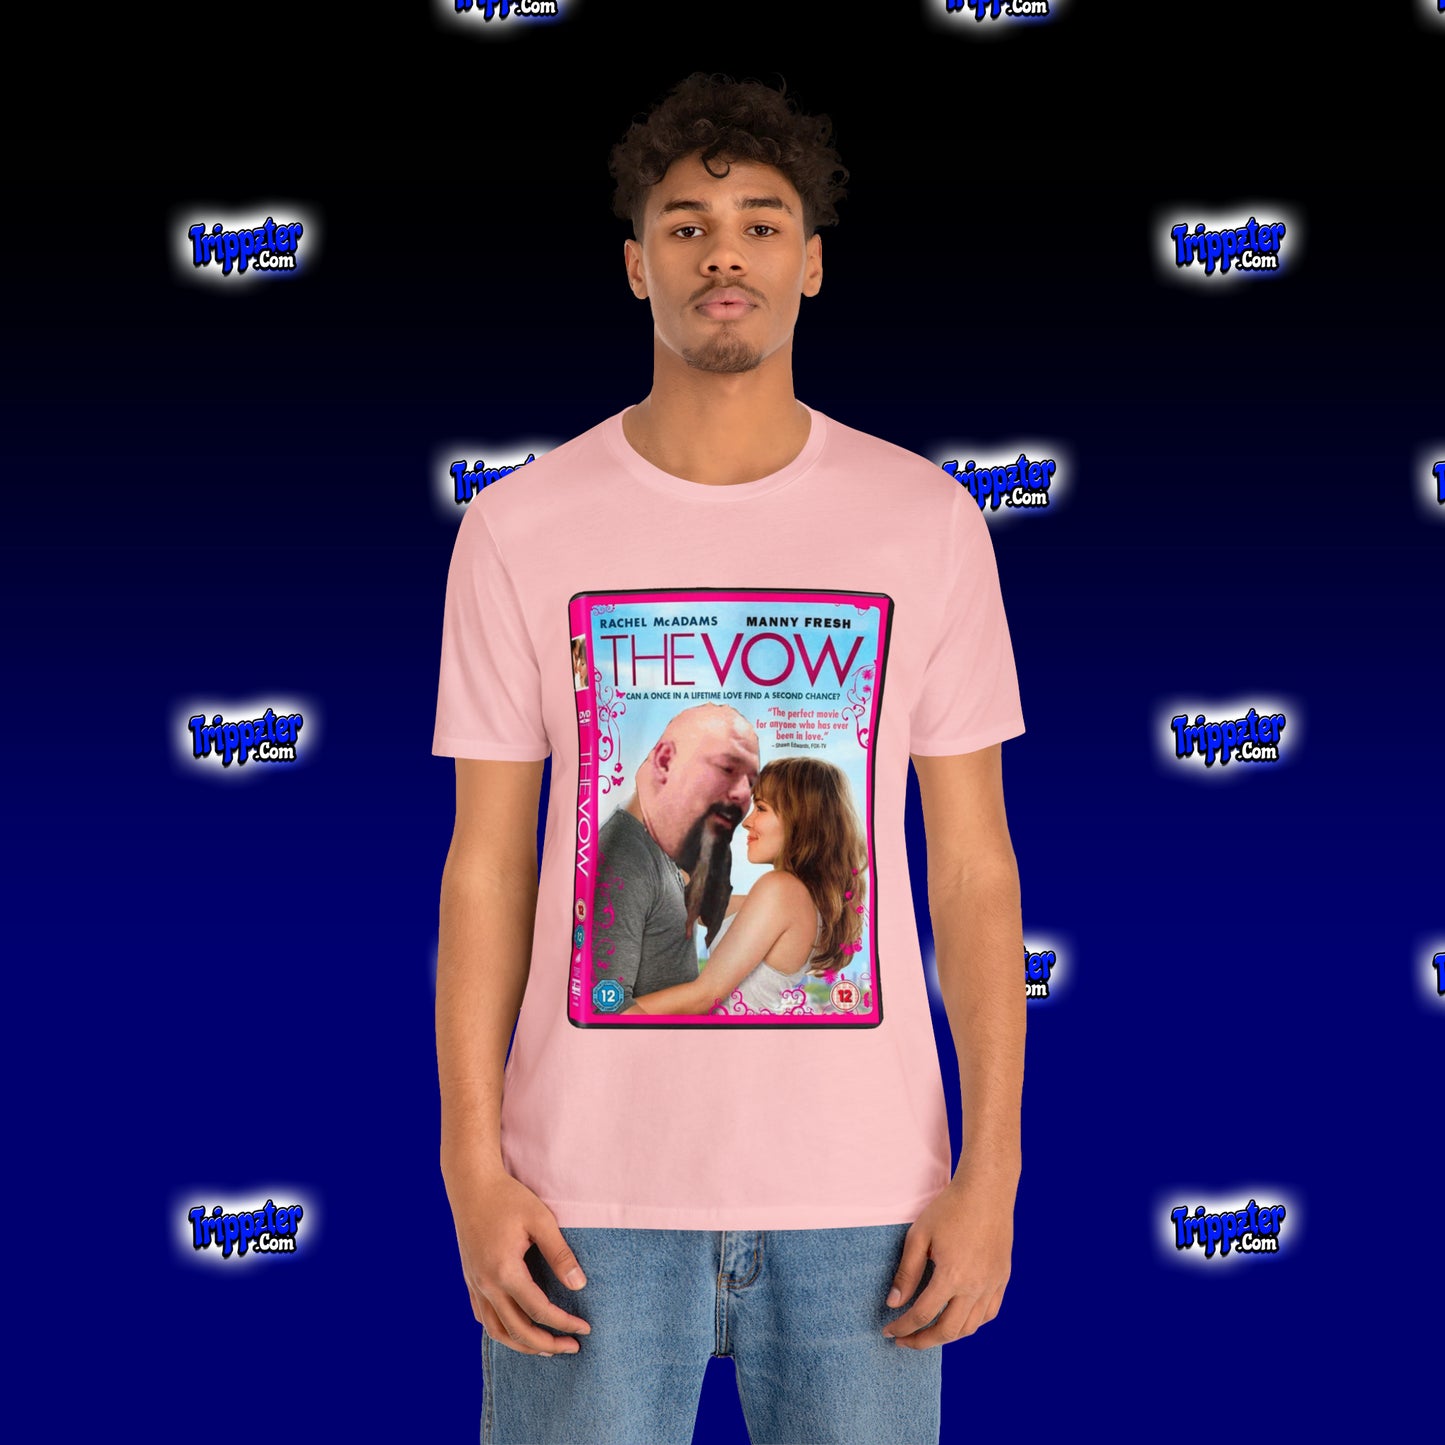 MannyFresh Valentines Shirt